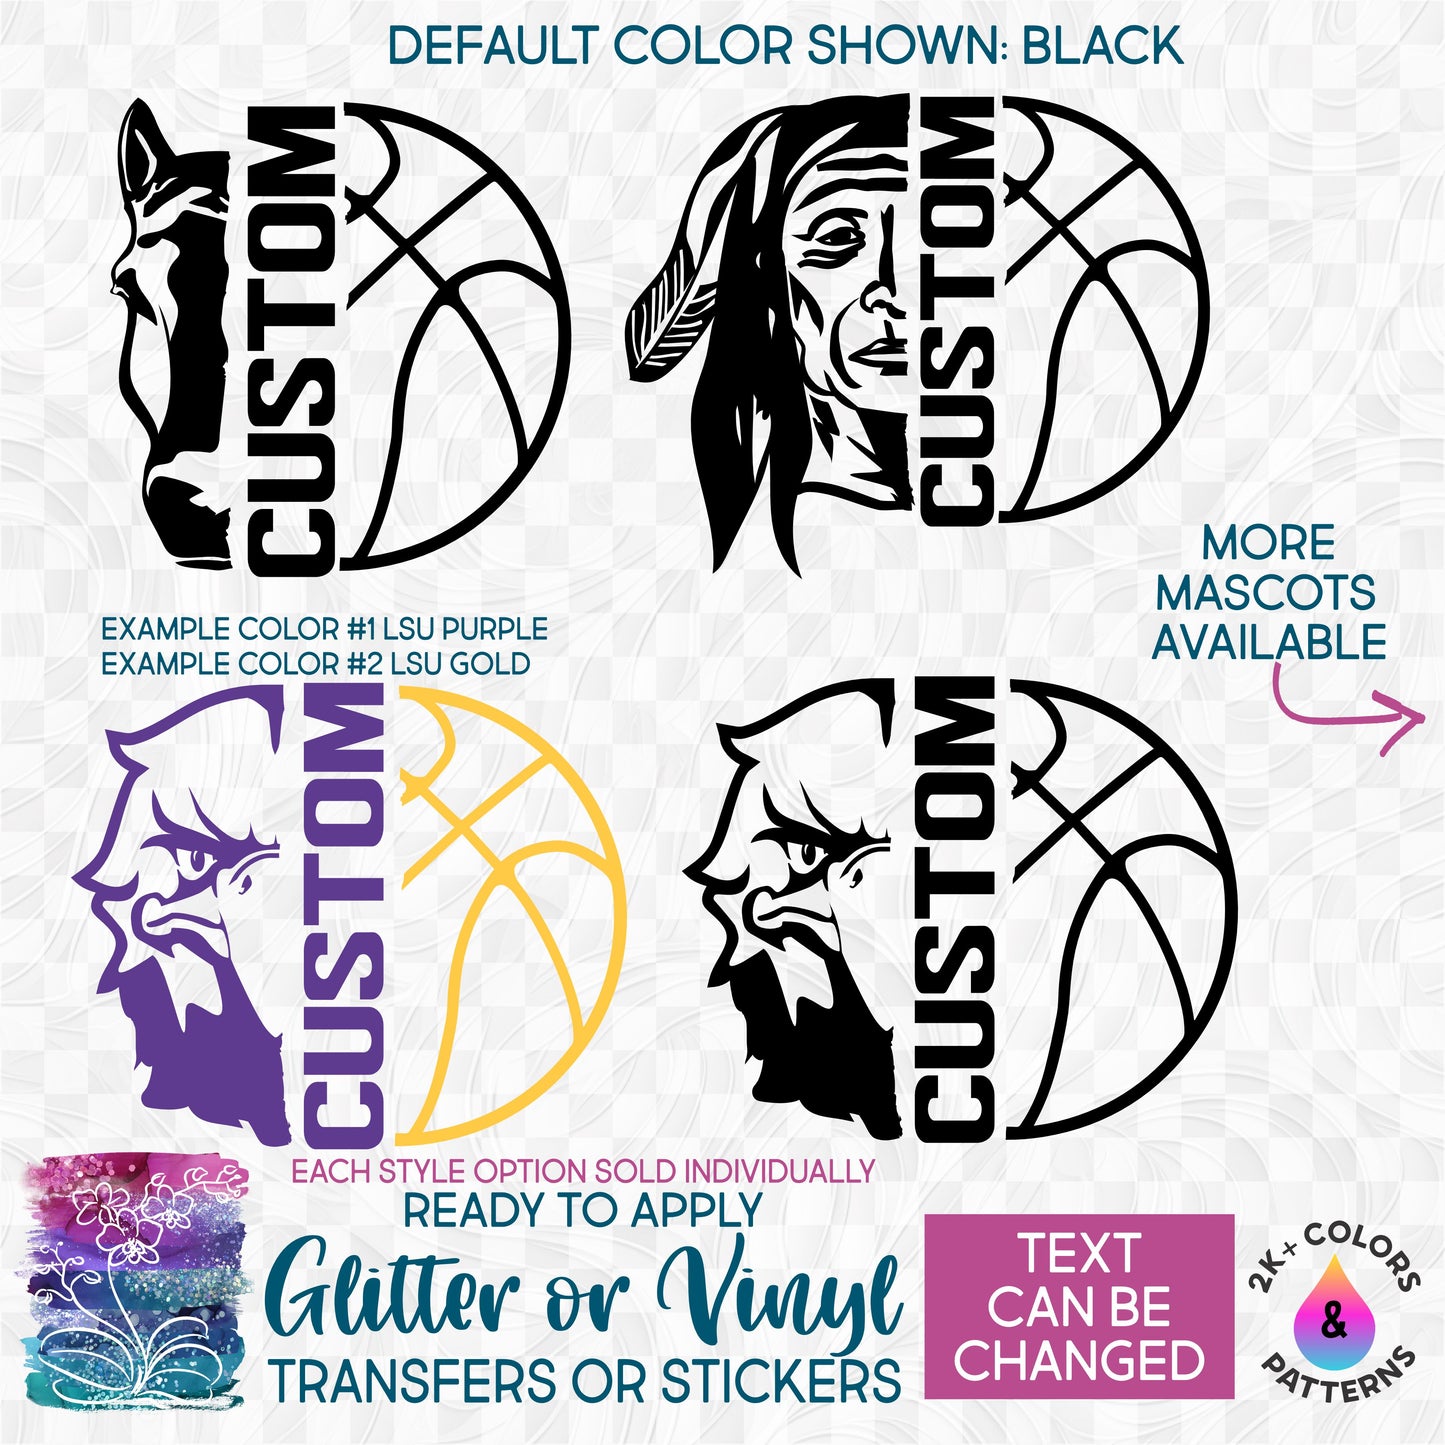 (s317-F) Split Basketball Mascot Team Glitter or Vinyl Iron-On Transfer or Sticker